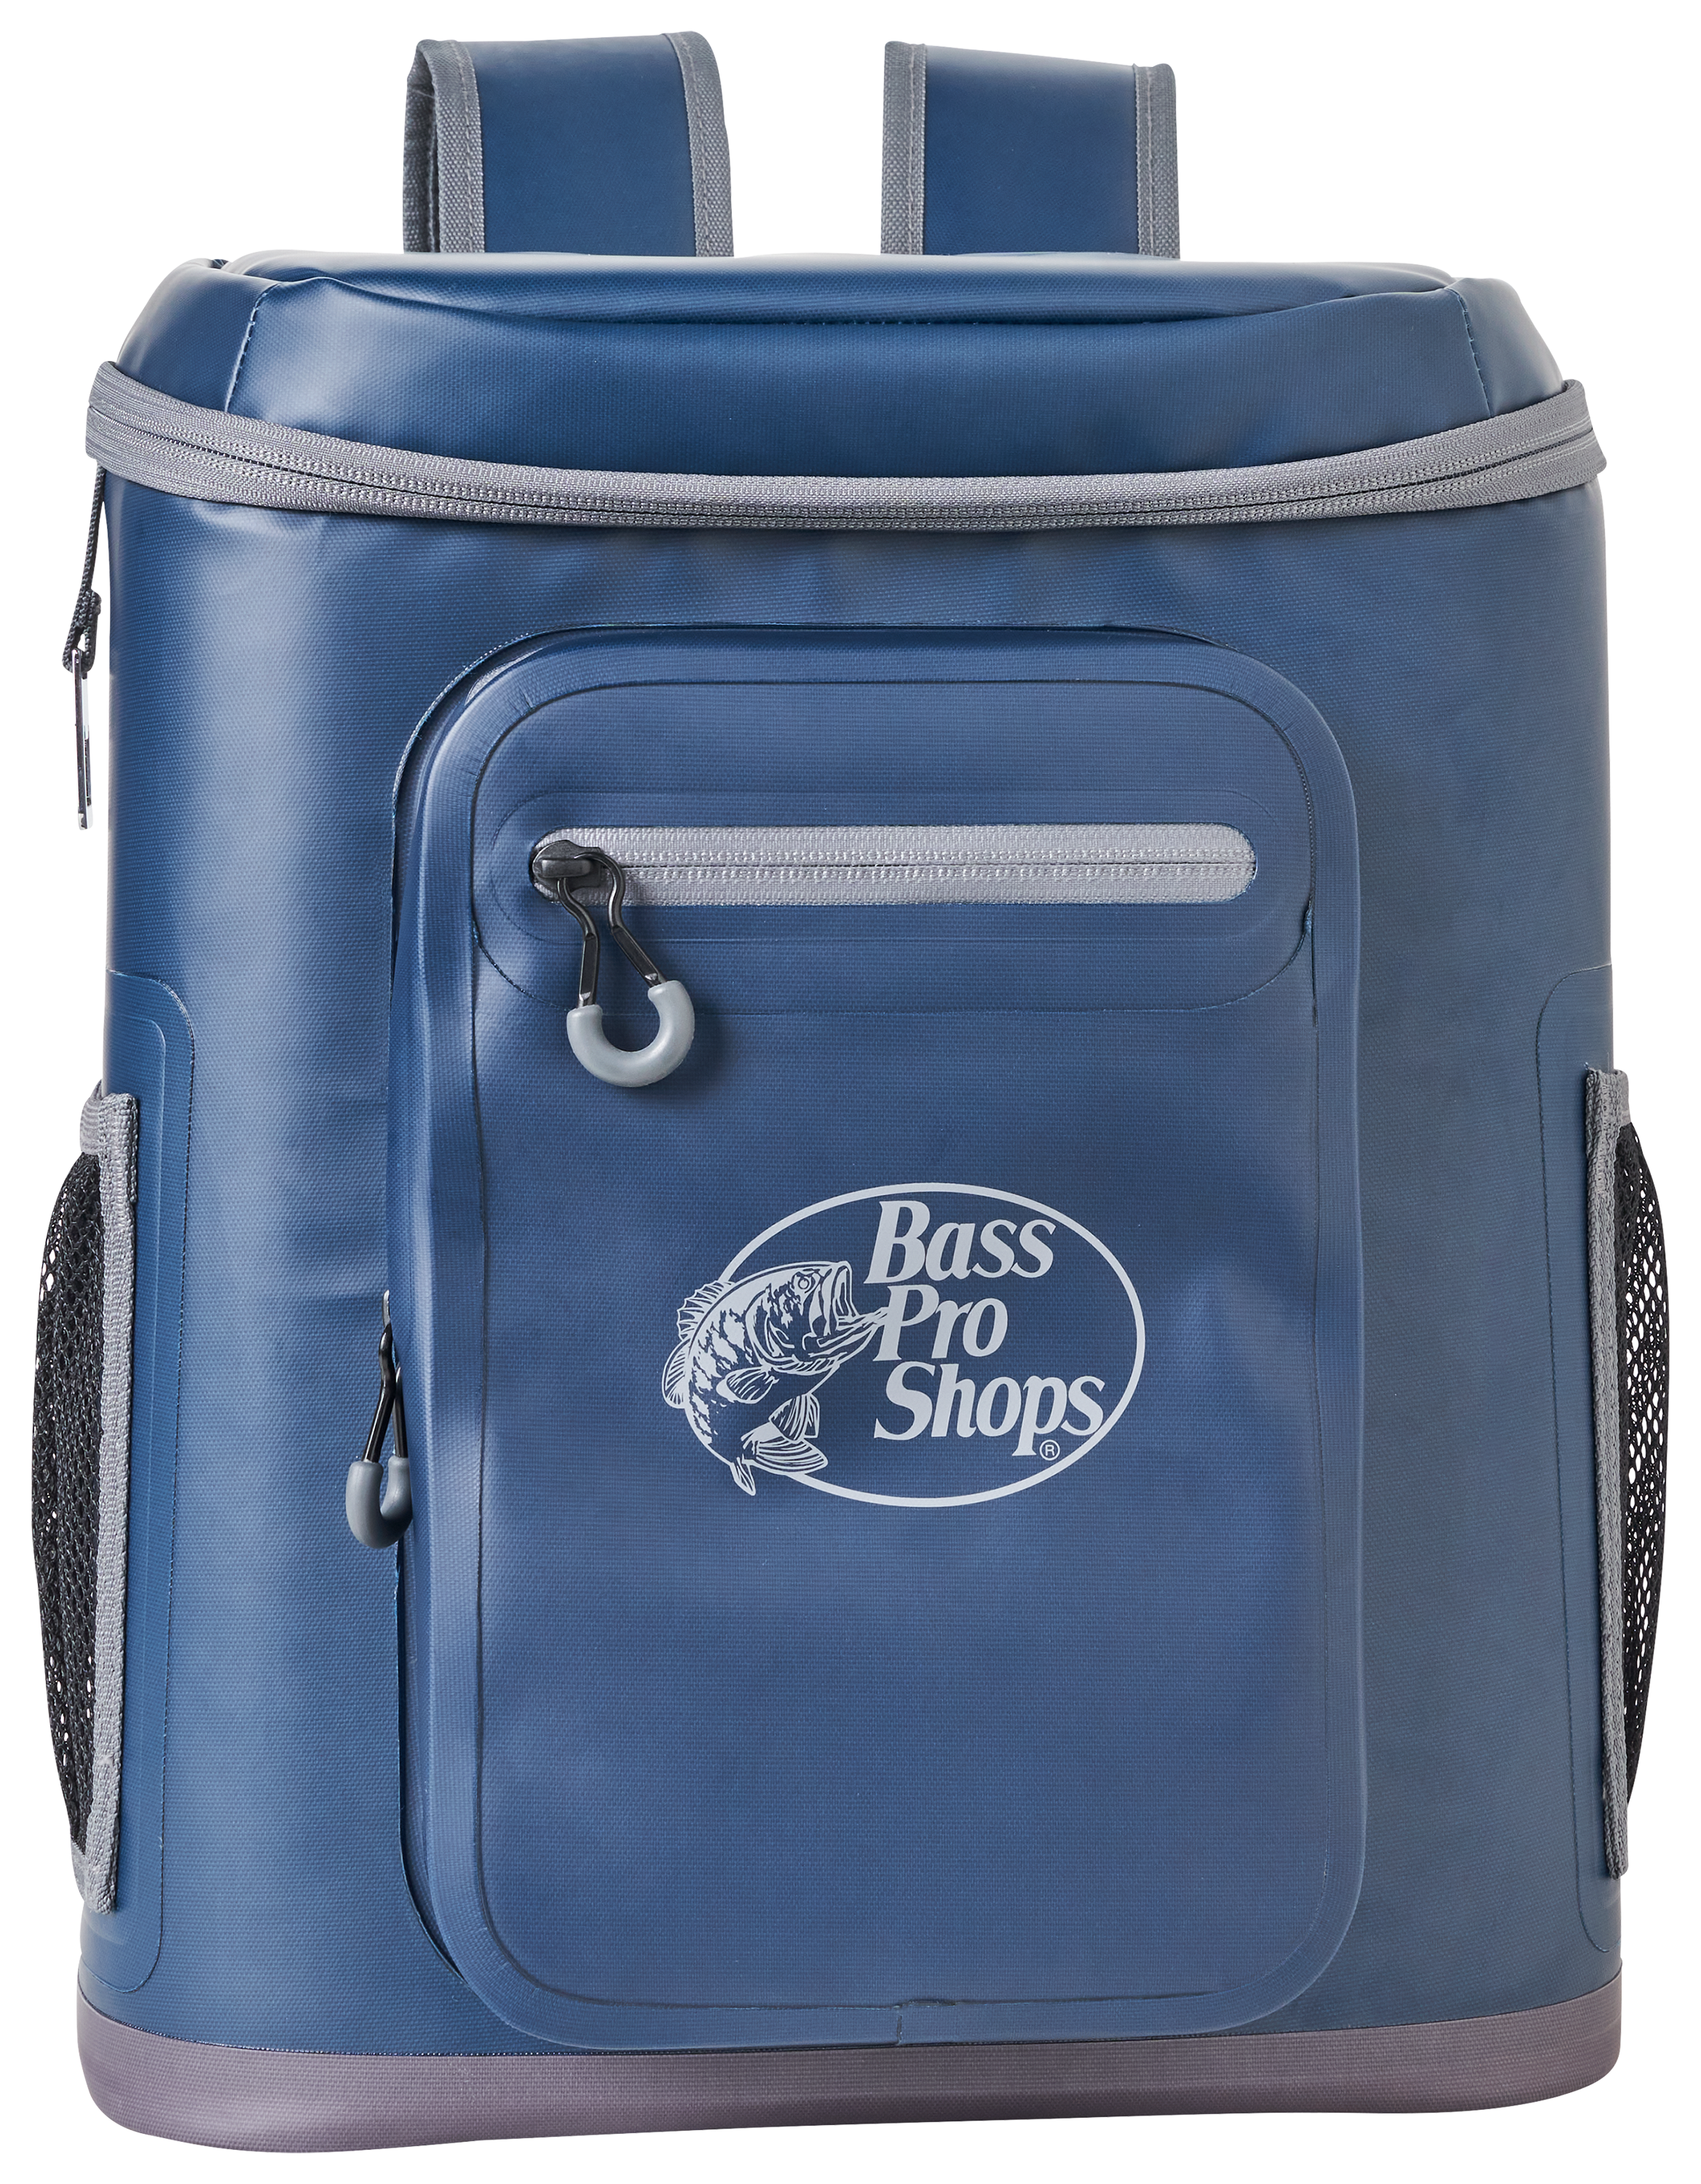 Bass Pro Shops Backpack Cooler - Blue